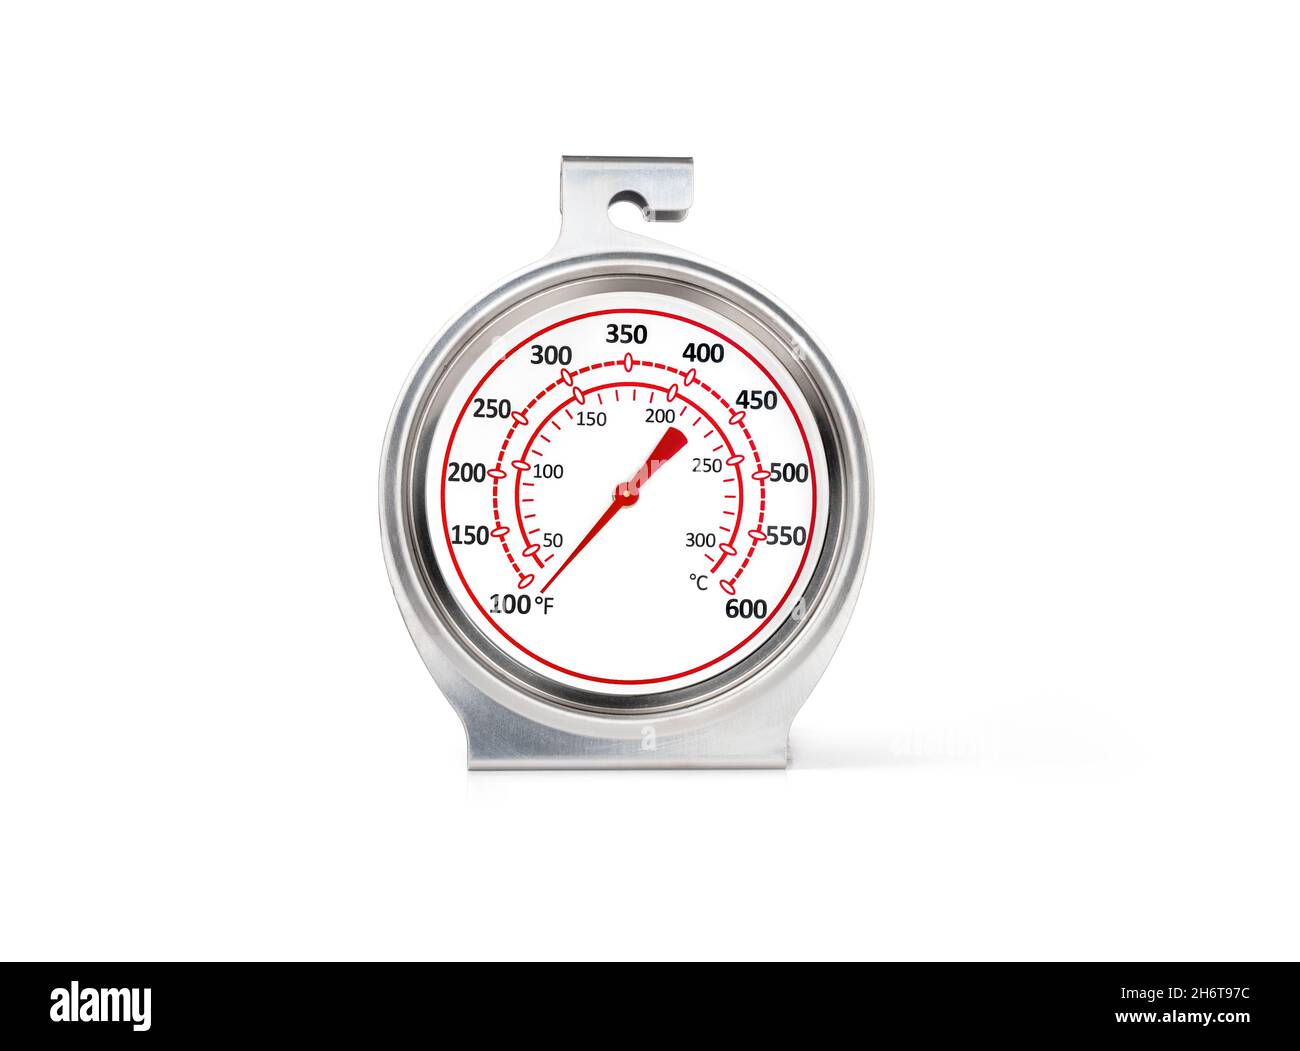 Ofenthermometer mit analogem Ziffernblatt und rotem Pfeil. Kochen Küchengerät, um die Genauigkeit von hohen Temperaturen in Fahrenheit und Celsiu zu messen oder zu testen Stockfoto